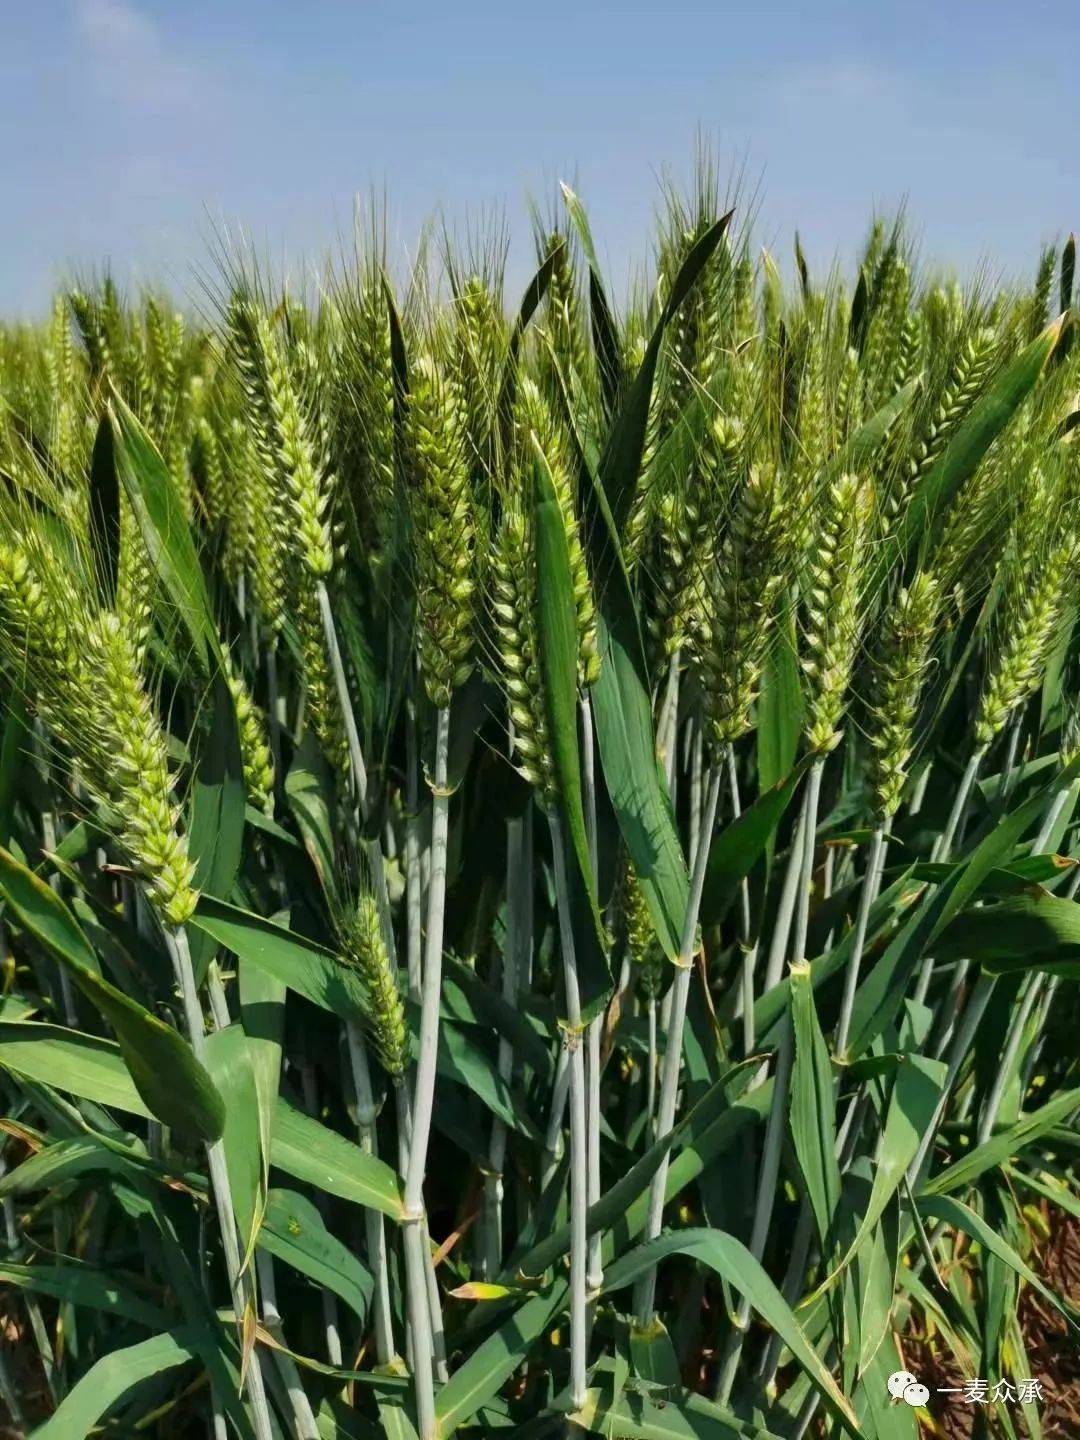 天麦178全国生产经营权独家转让签约仪式67